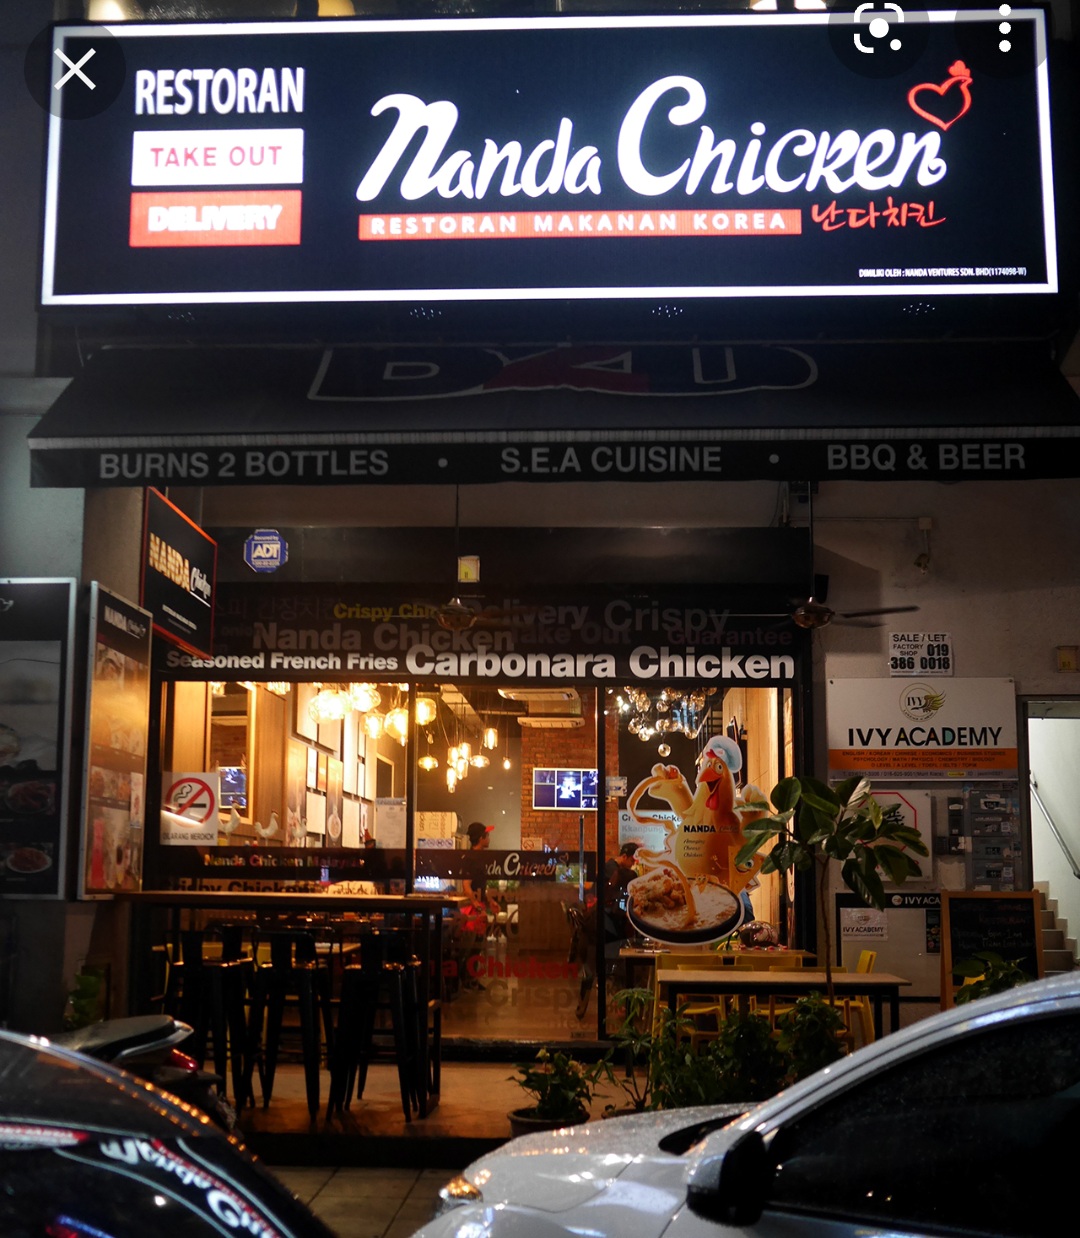 Nanda Chicken